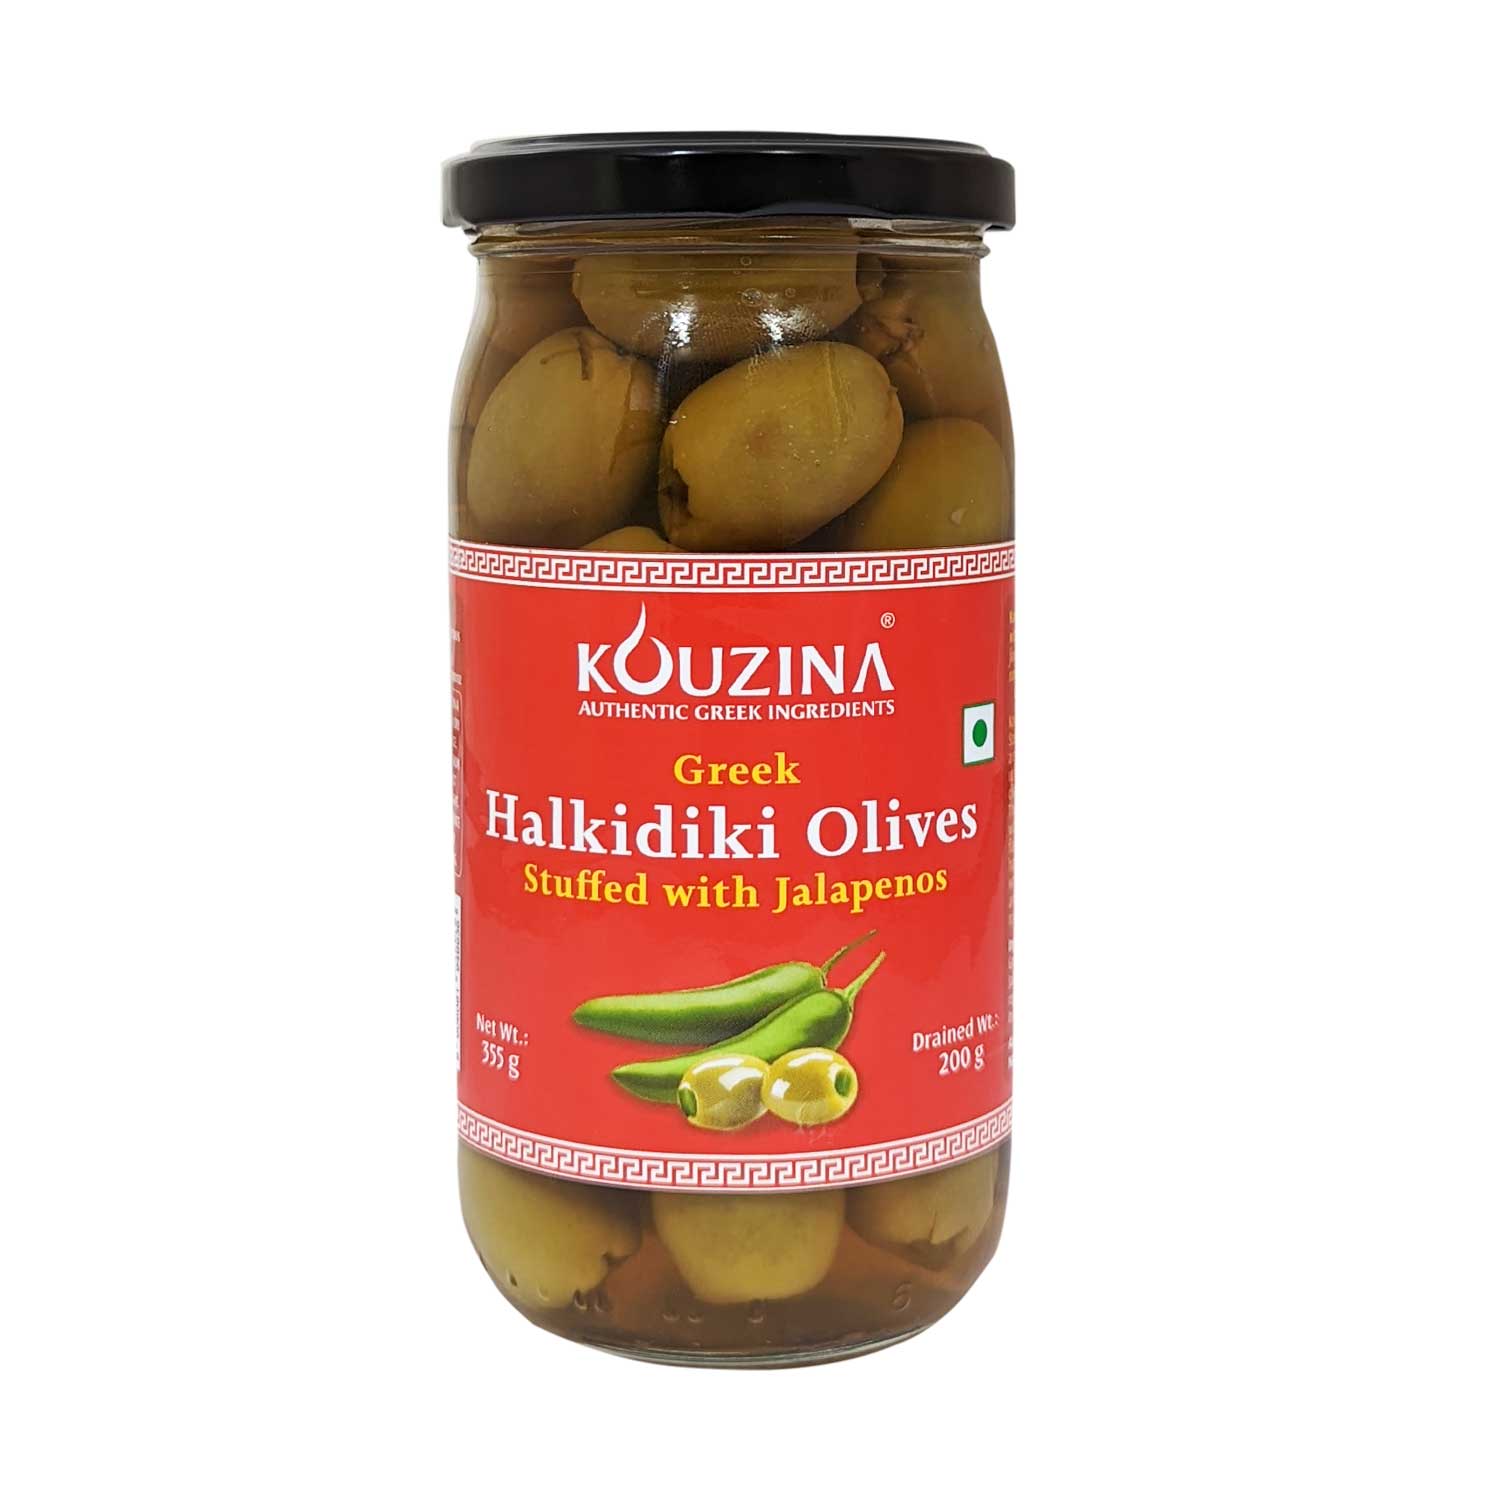 Kouzina Halkidiki Olives Stuffed with Jalapenos, 200g